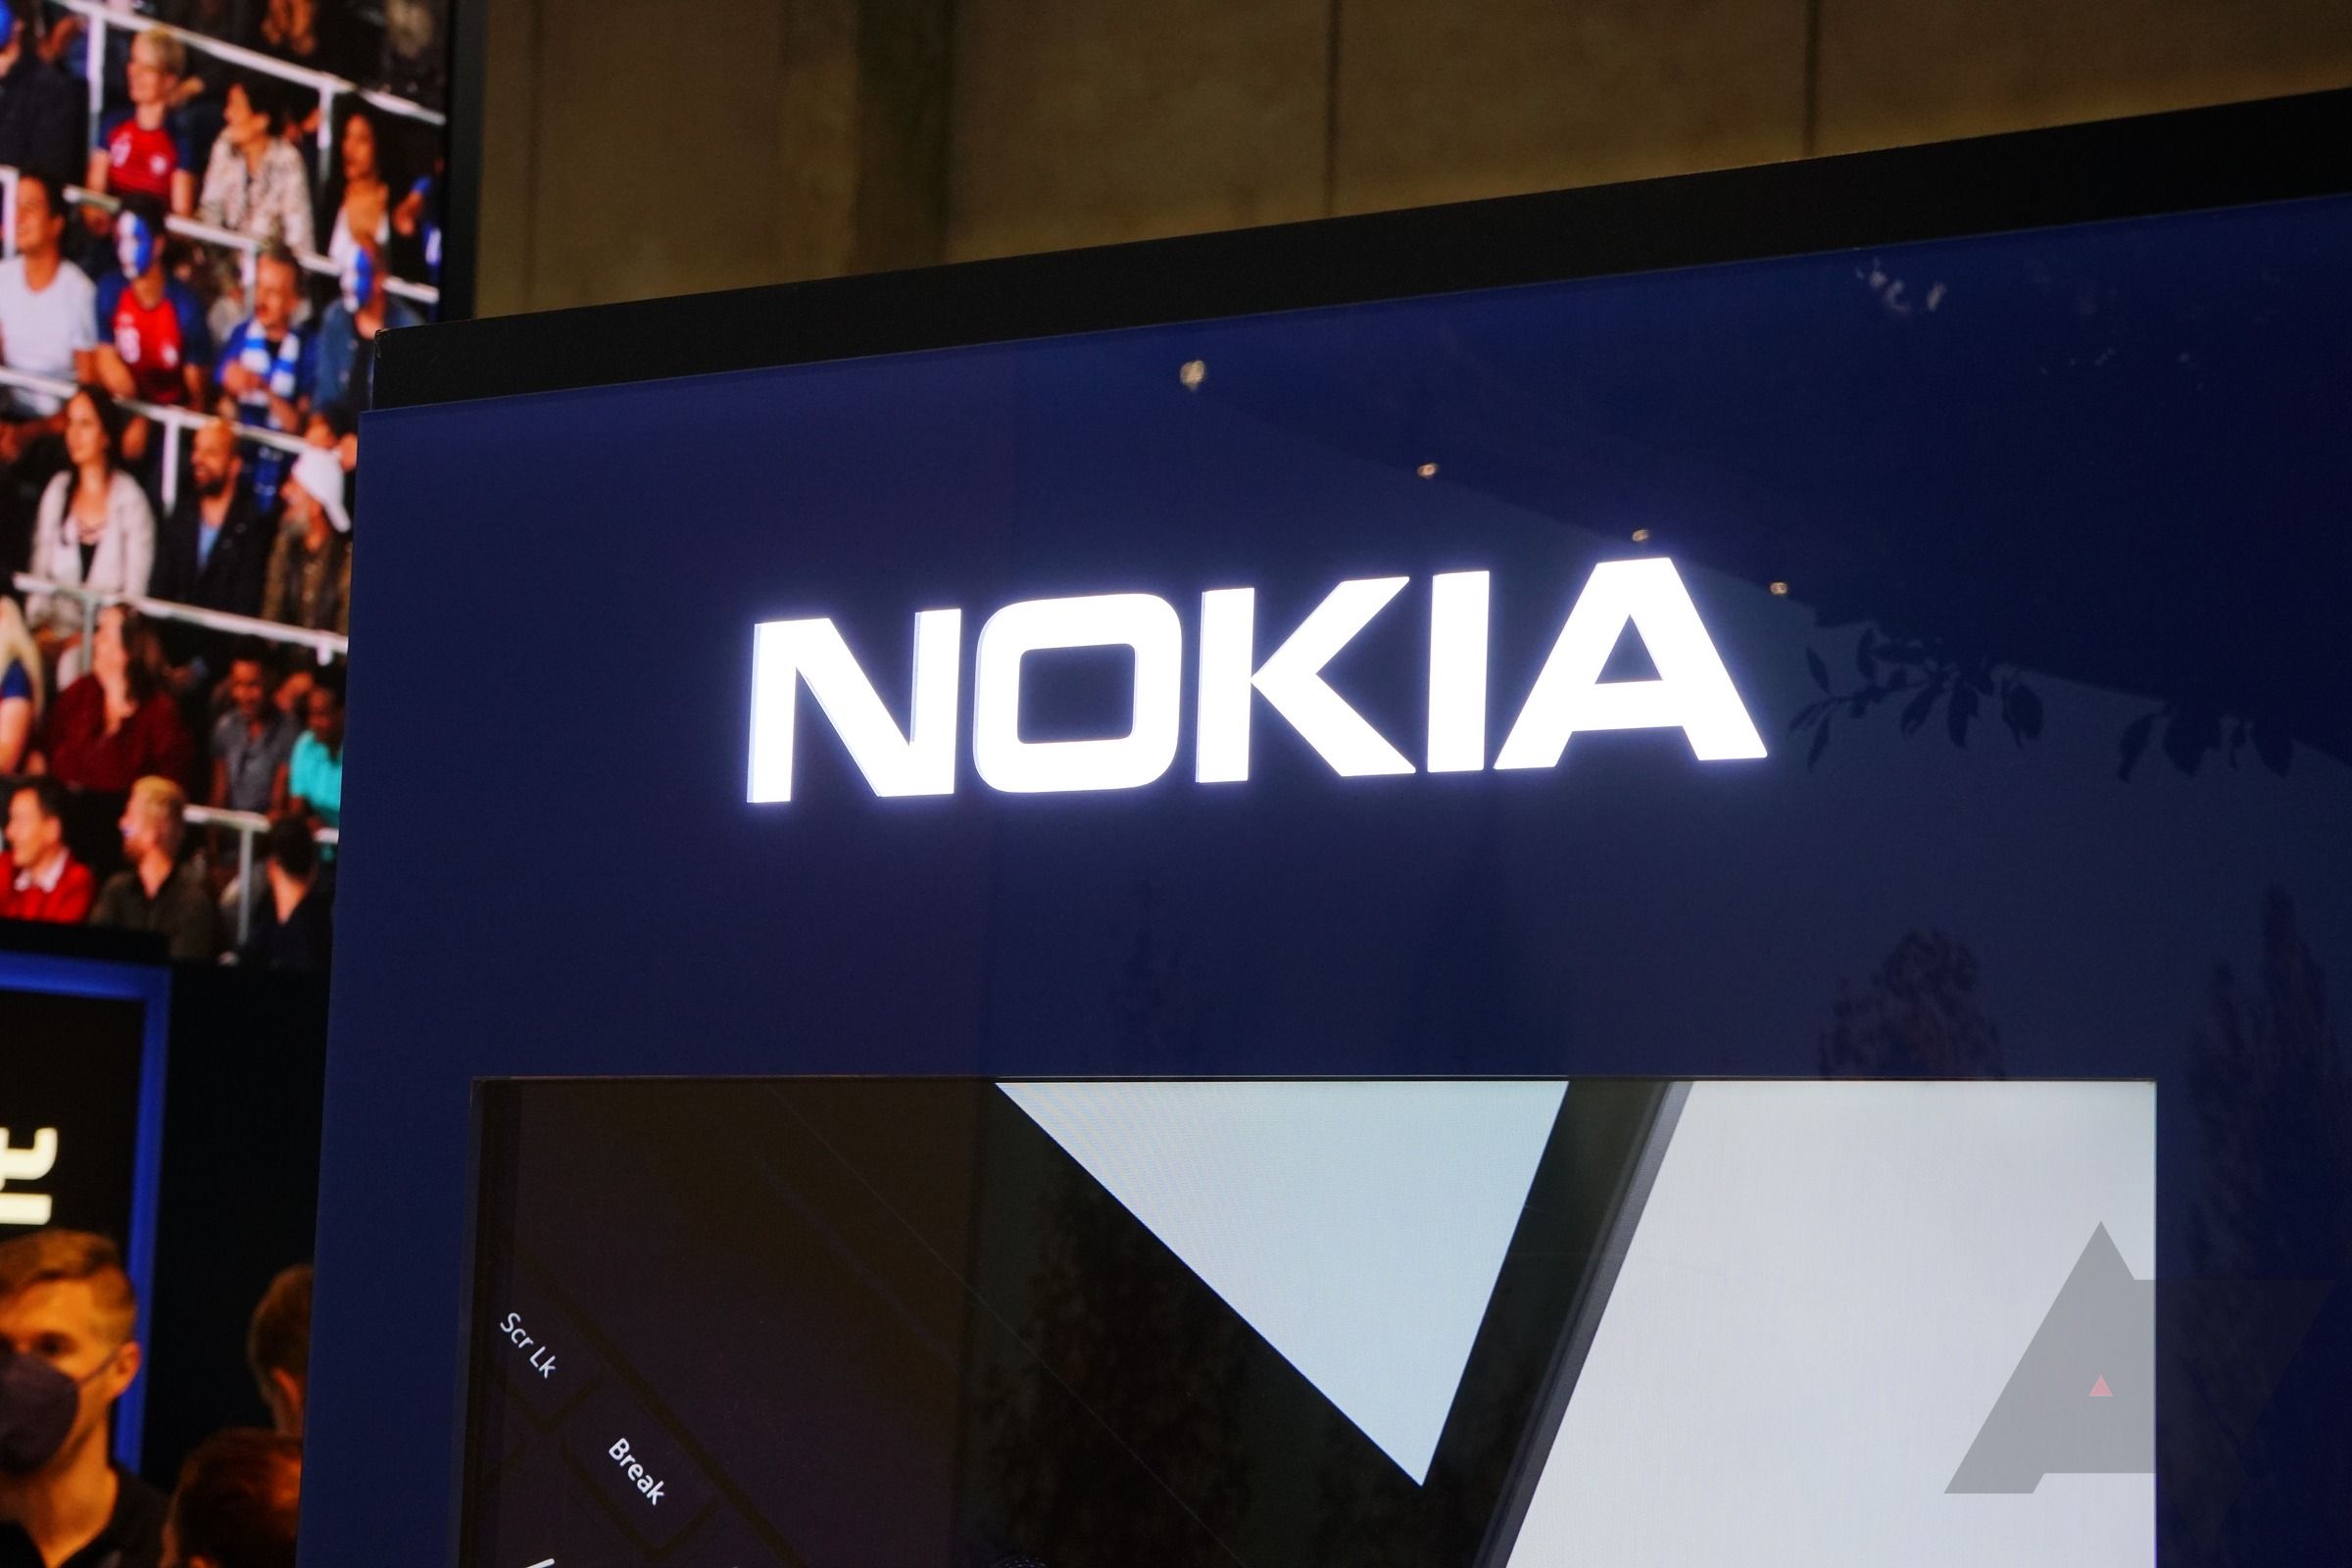 The Nokia logo on a screen